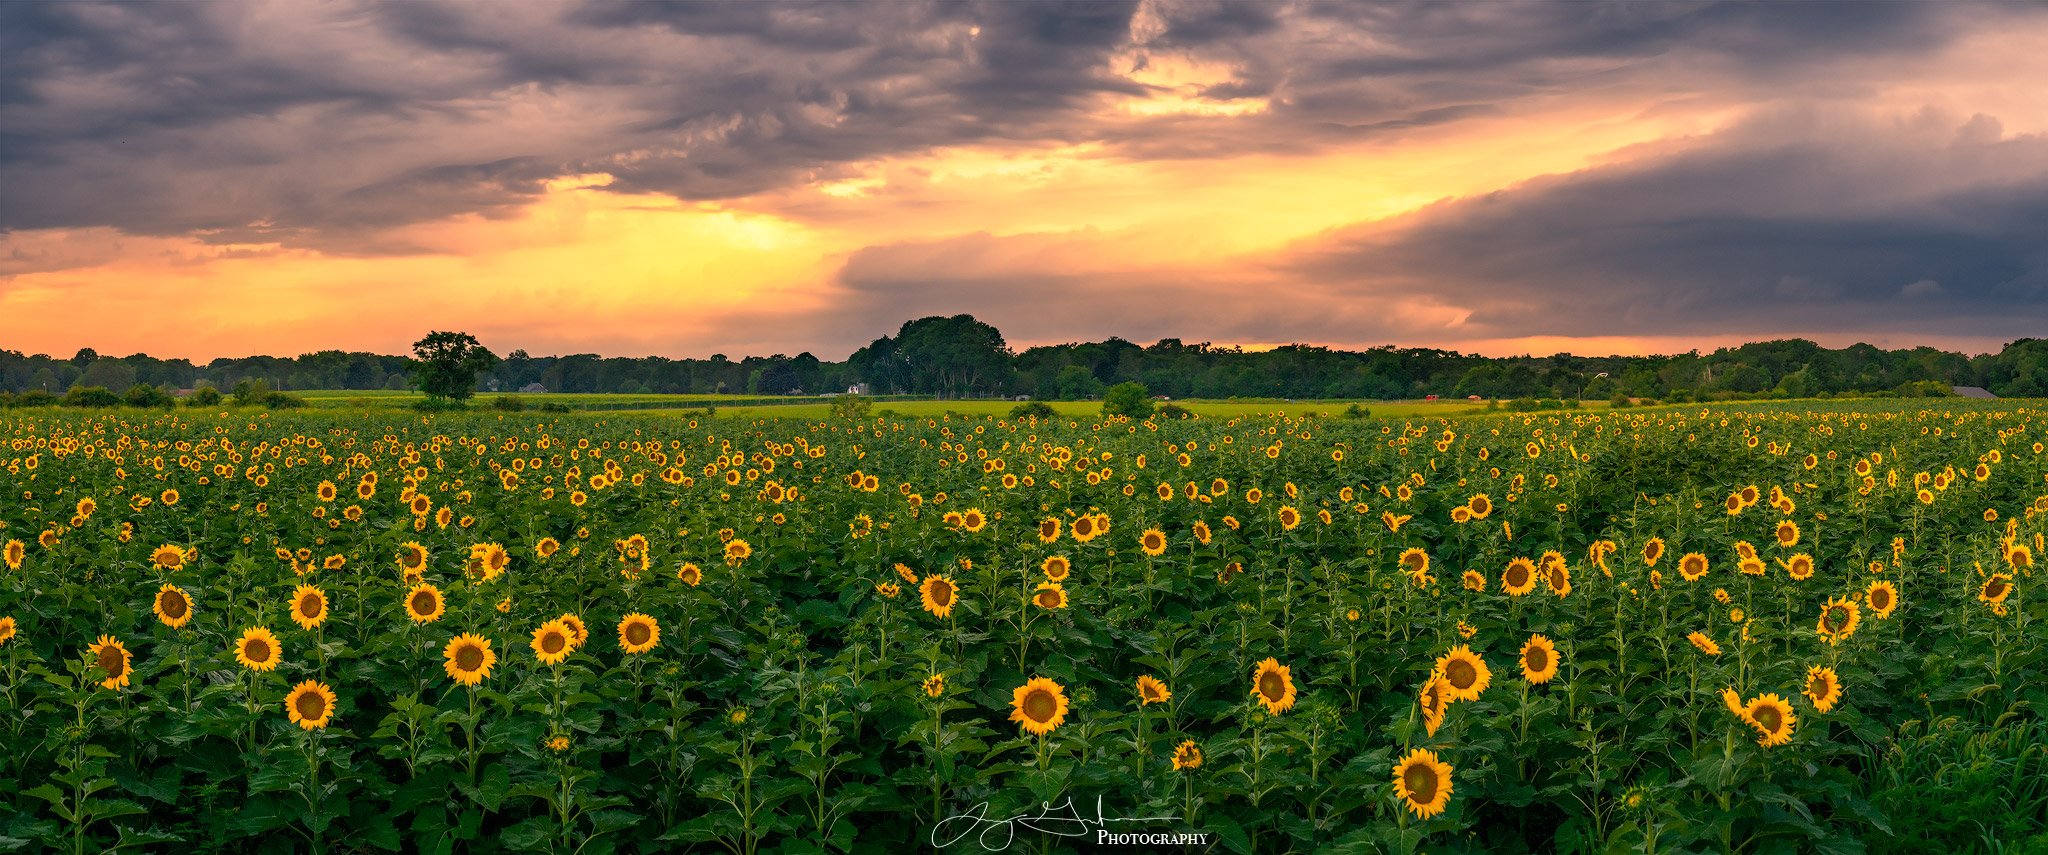 Sunflower-Pano.jpg